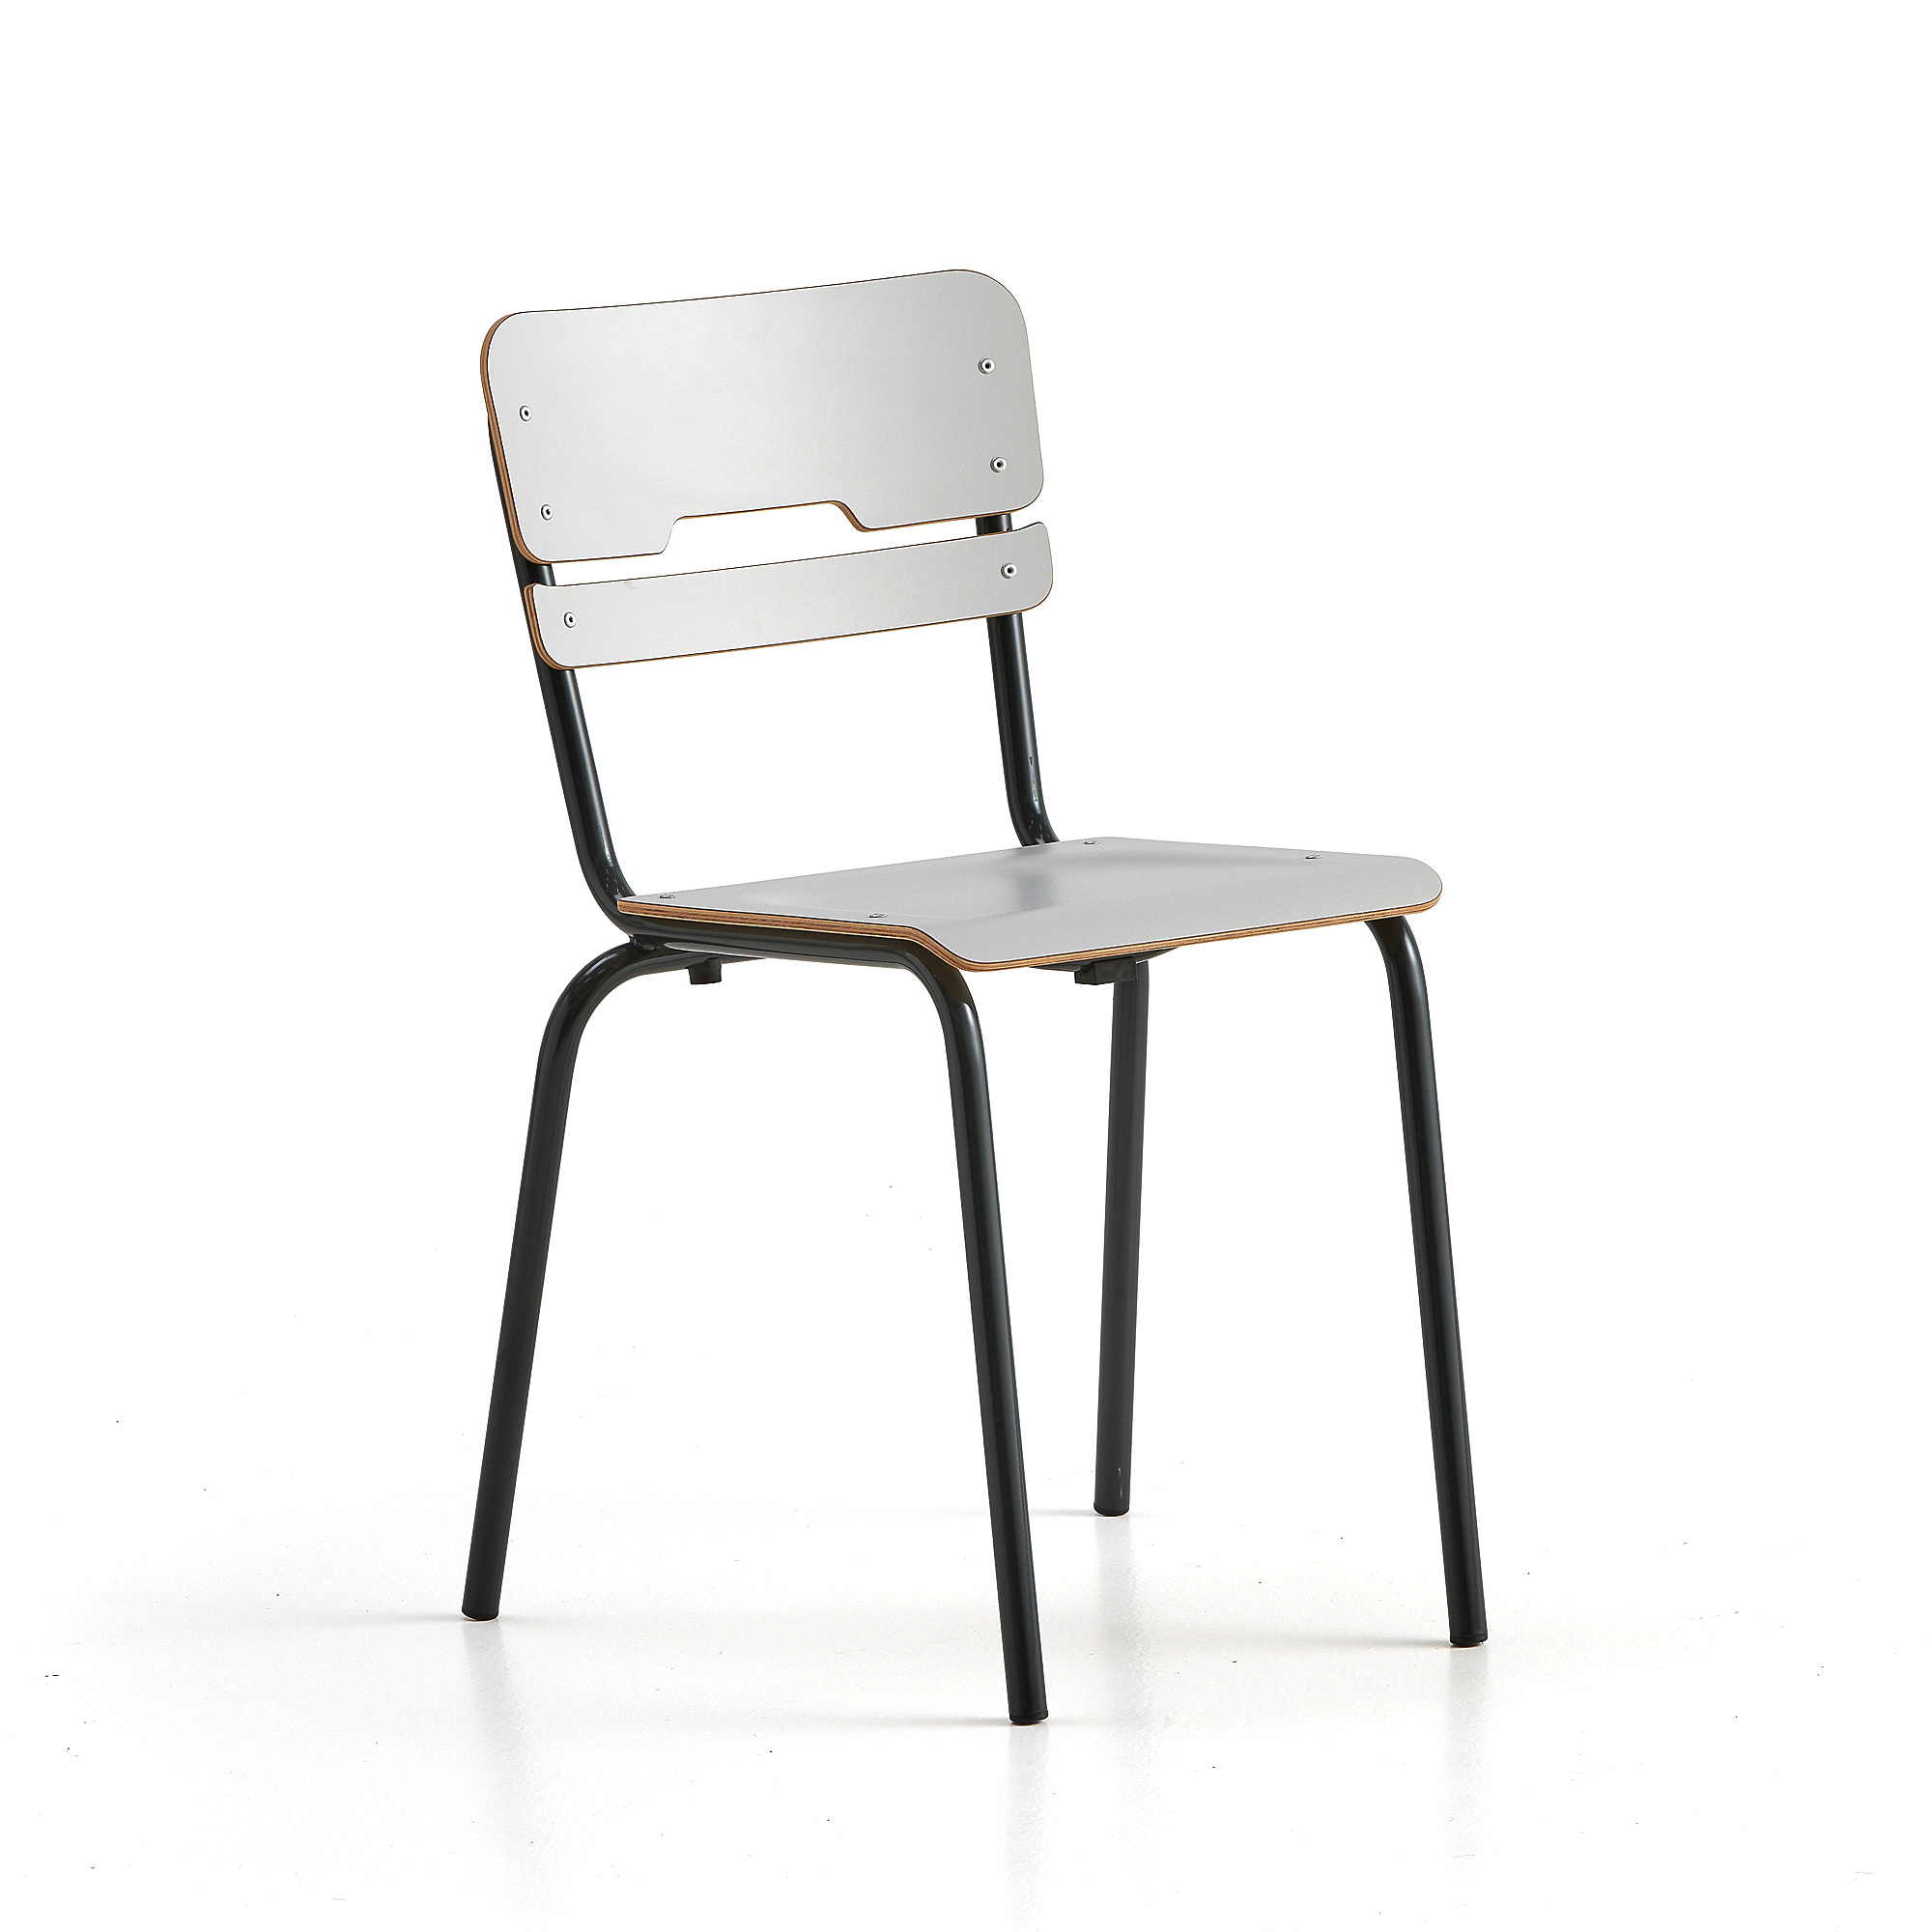 Školní židle SCIENTIA, sedák 360x360 mm, výška 460 mm, antracitová/šedá